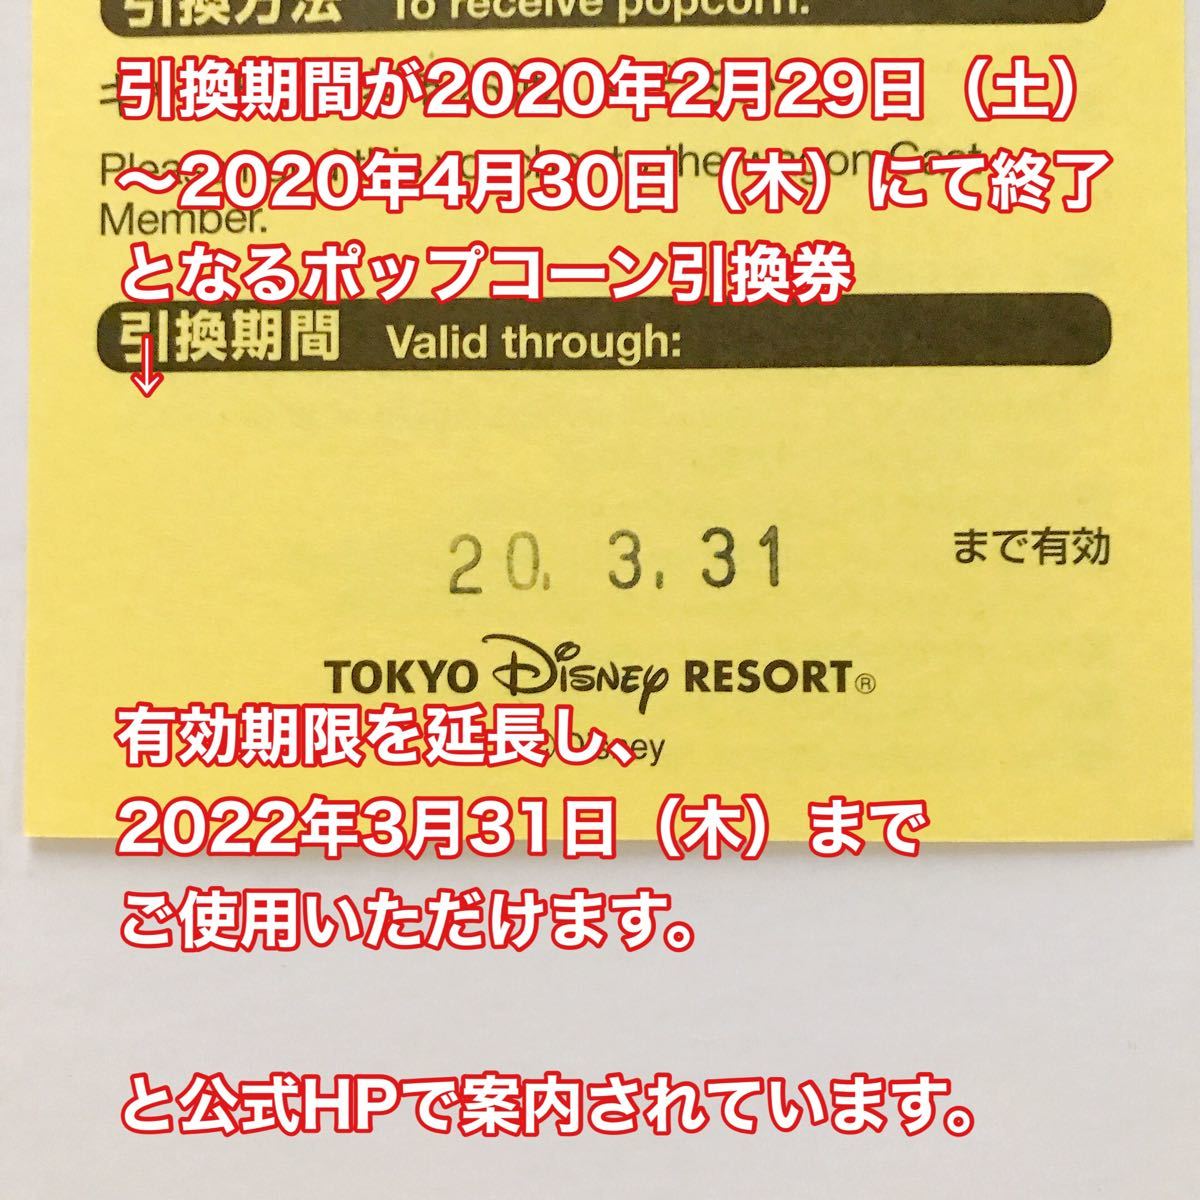 即発送可 送料無料 ポップコーン引換券 3枚セット東京ディズニーランド 東京ディズニーシー 有効期限22年3月31日 ディズニー ポップコーン 引換券 3枚 Michalvydrzel Cz